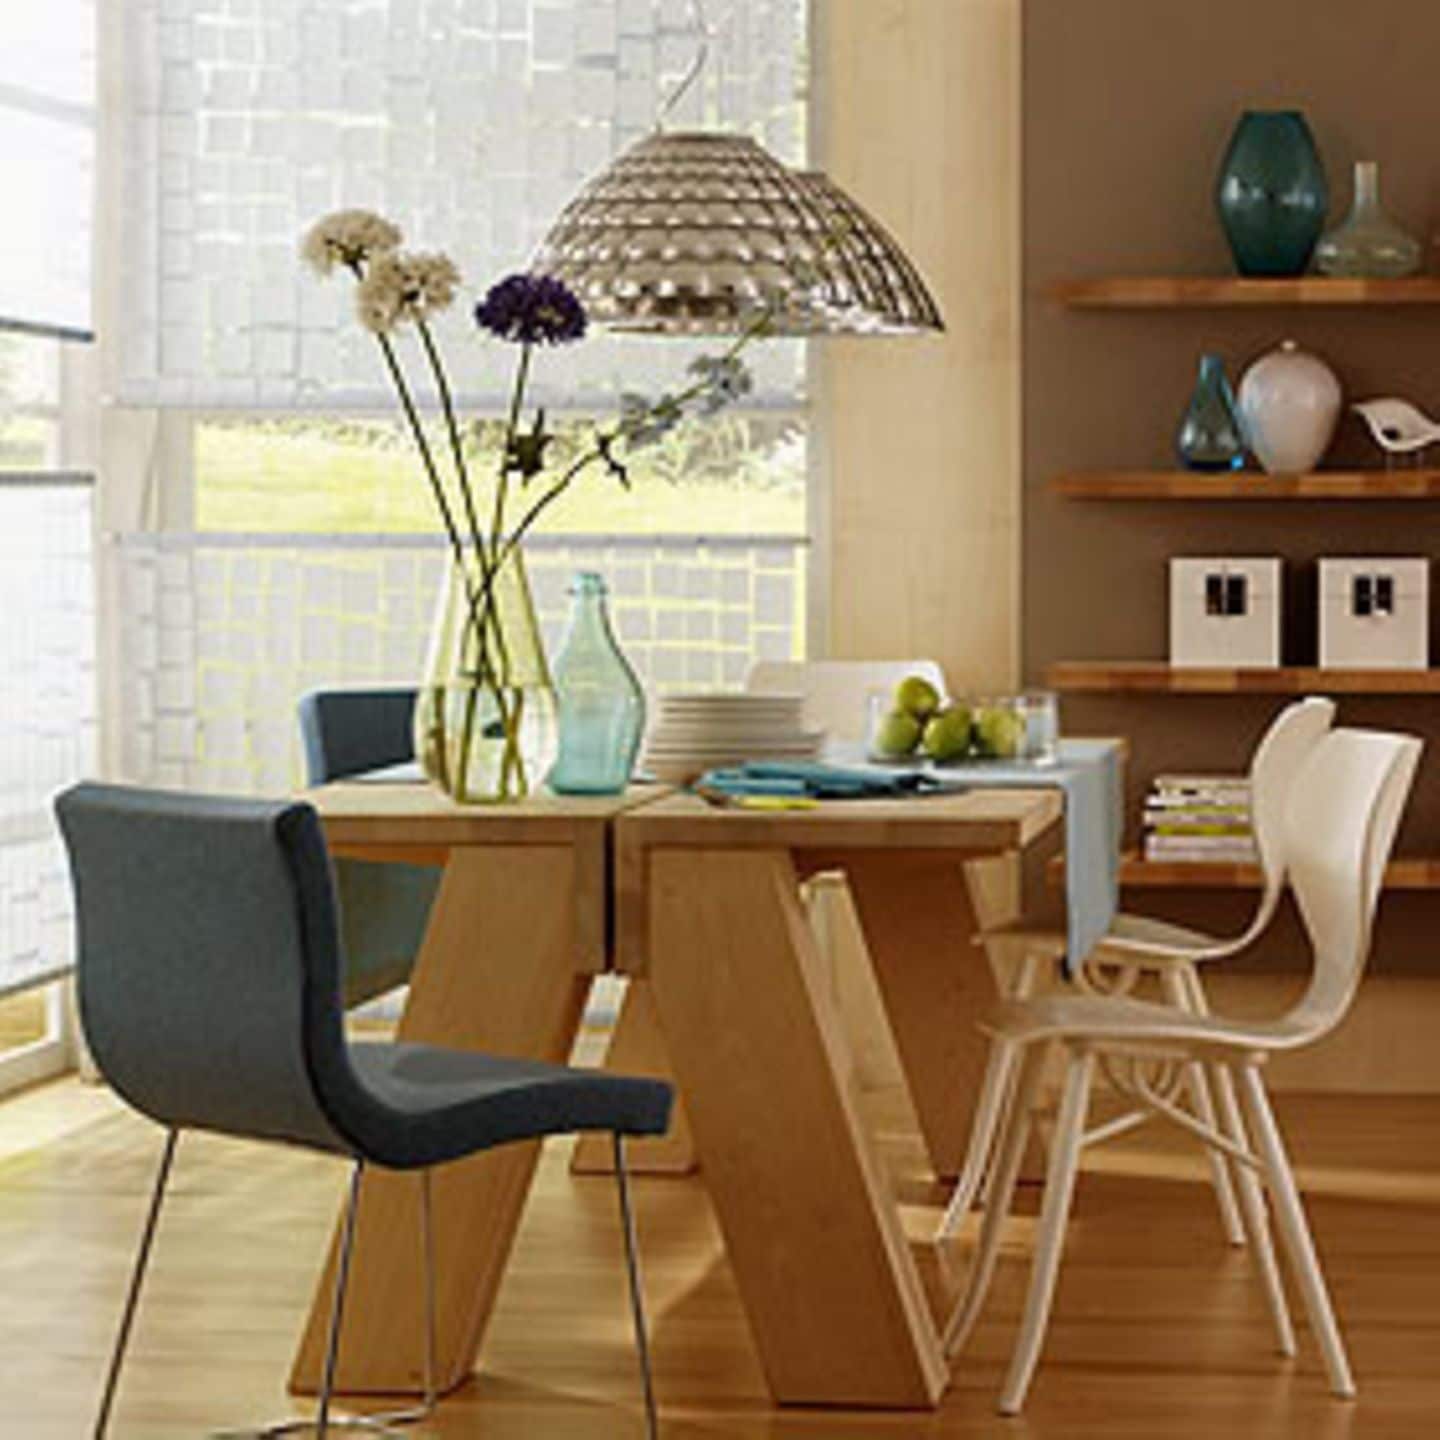 Das klassische Holz für Möbel und Holzböden ist hell, hat eine feine, gleichmäßige Textur und lässt sich gut polieren. Gleichzeitig ist es hart, belastbar und formstabil und damit auch als Bodenholz geeignet.